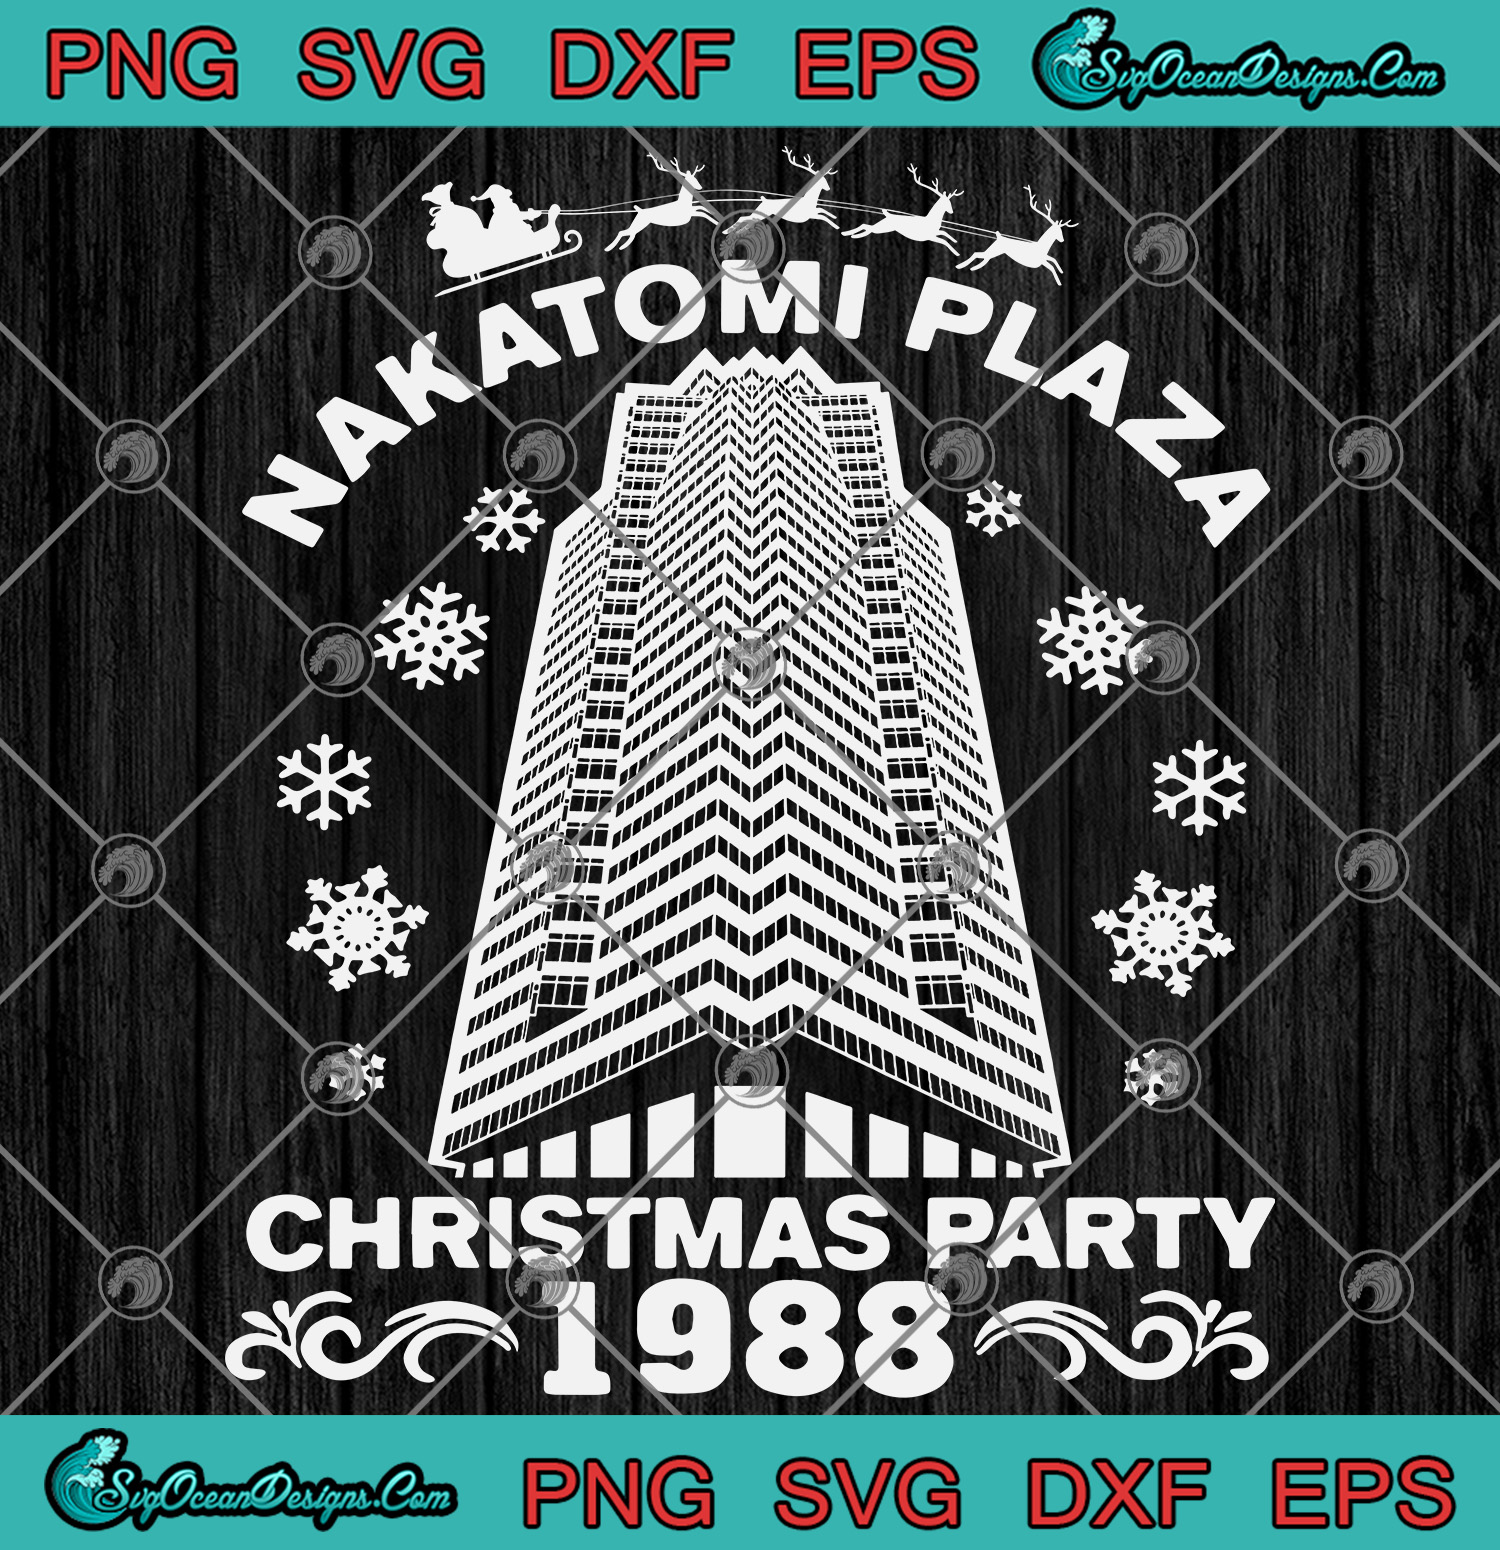 Buổi tiệc Giáng sinh tại Nakatomi Plaza đầy bất ngờ và kịch tính đang chờ bạn. Hãy xem hình ảnh để tham gia cuộc vui và tìm hiểu thêm về cuộc phiêu lưu tuyệt vời này.